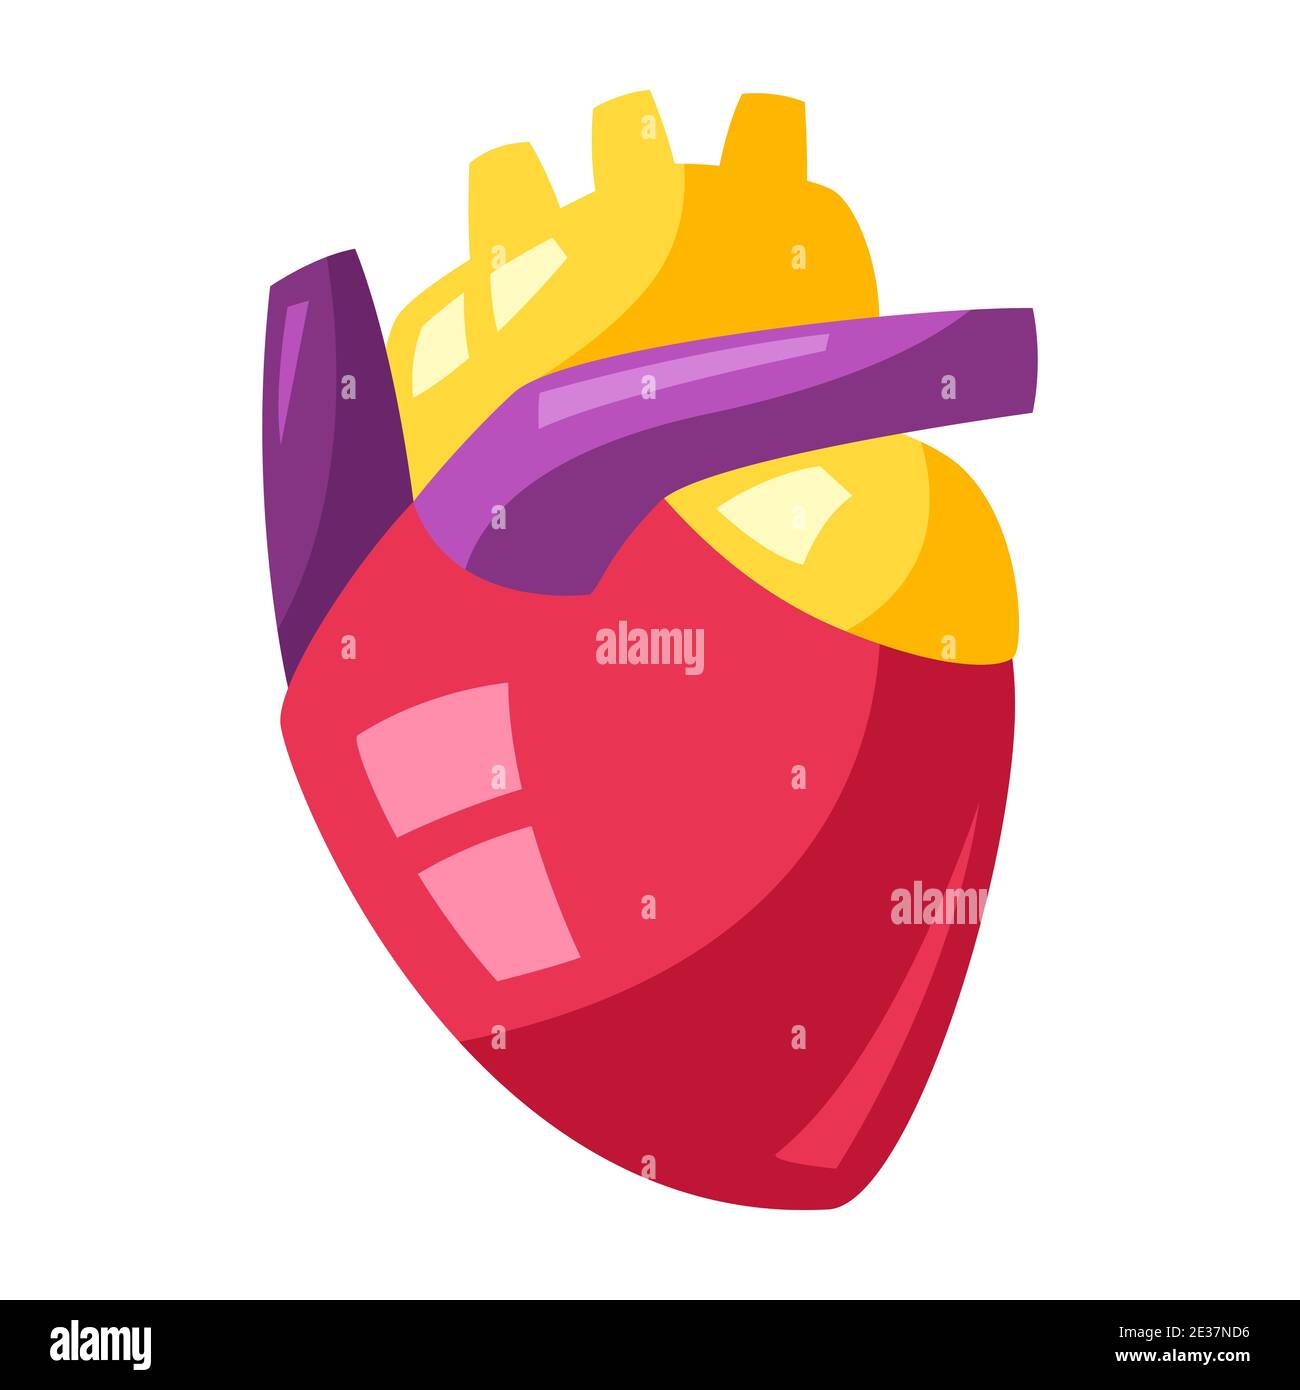 Illustrazione del cuore umano. Illustrazione Vettoriale